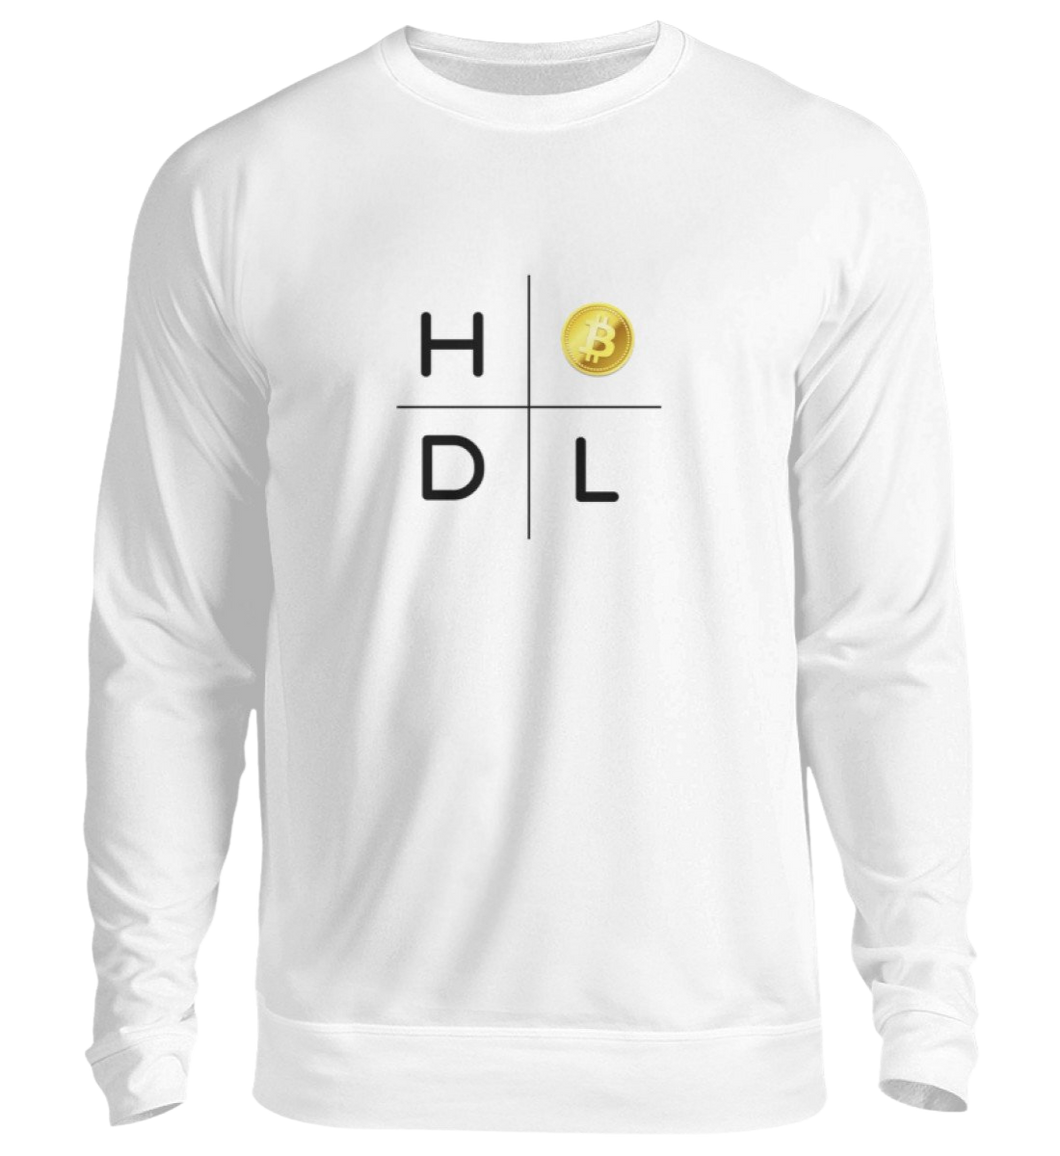 Bitcoin HODL Sweatshirt